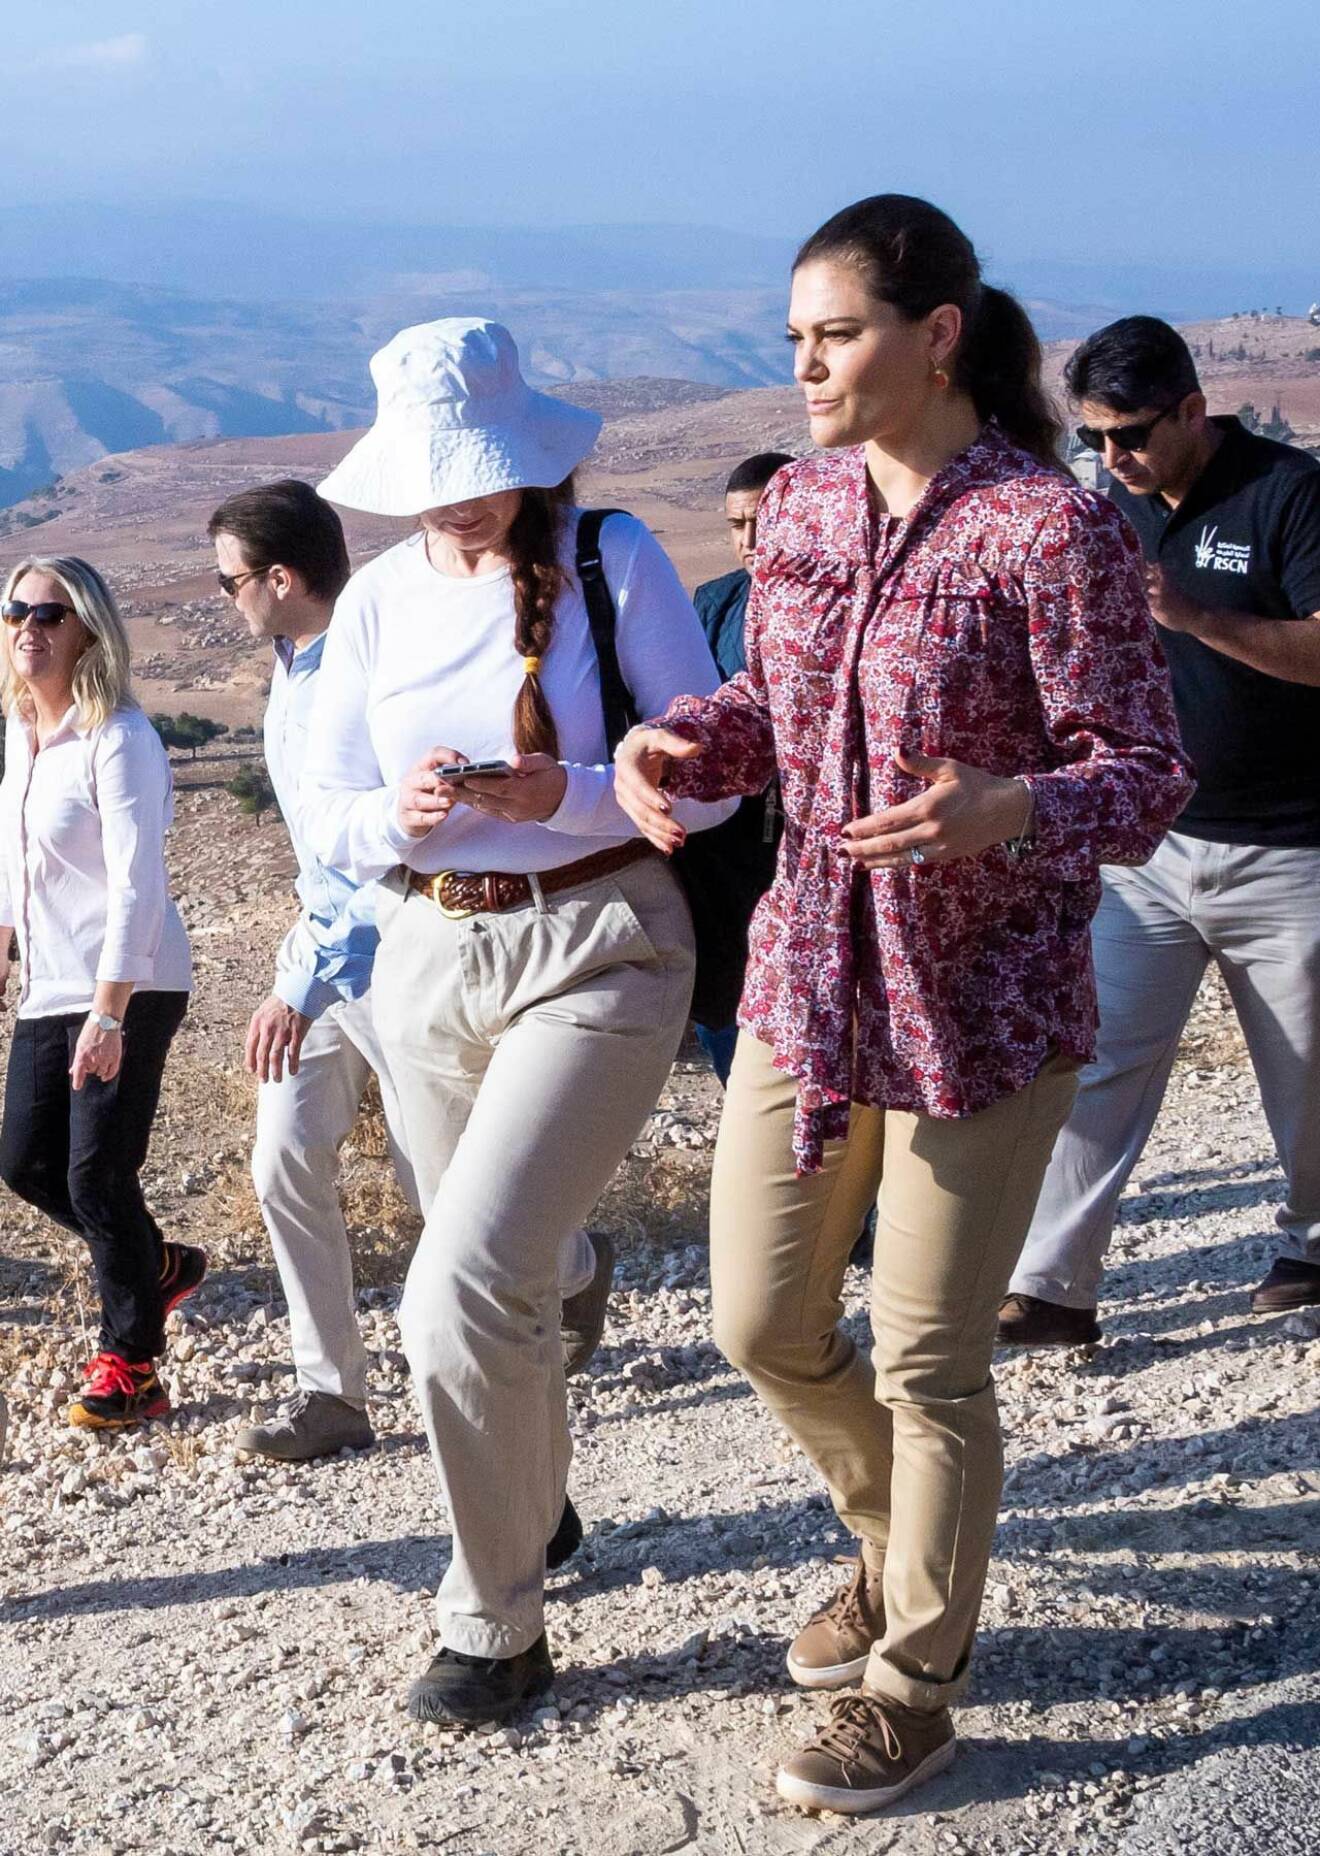 Svensk Damtidnings reporter Helena Wiklund fick en pratstund med kronprinsessan Victoria under vandringen på Jordan Trail i Jordanien.